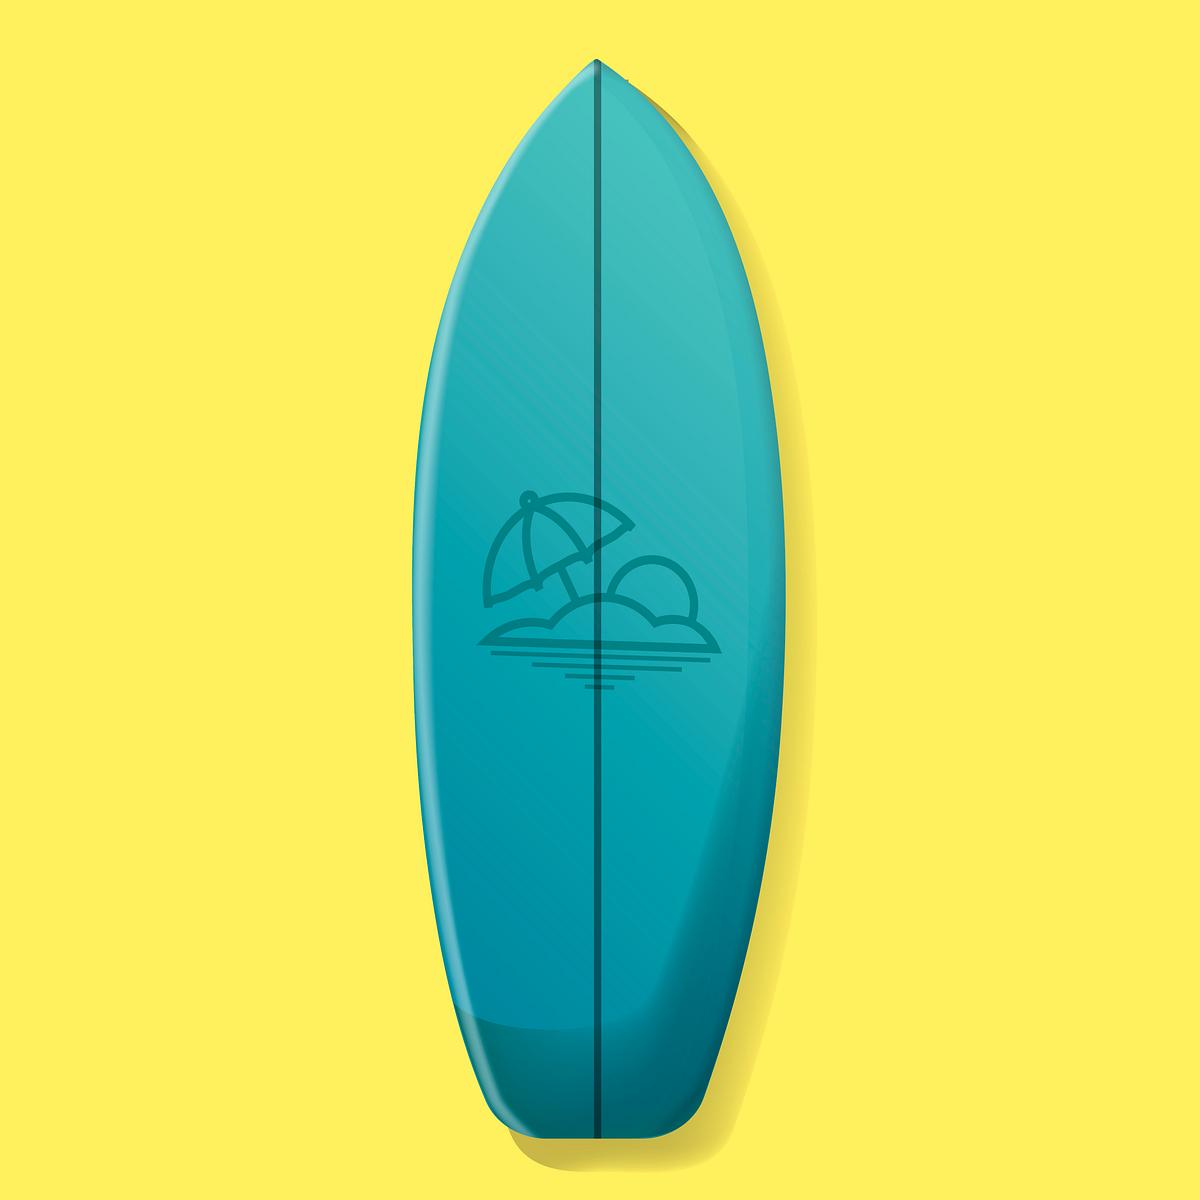 Blue Surfboard Vector Illustration Free Stock Vector 390729